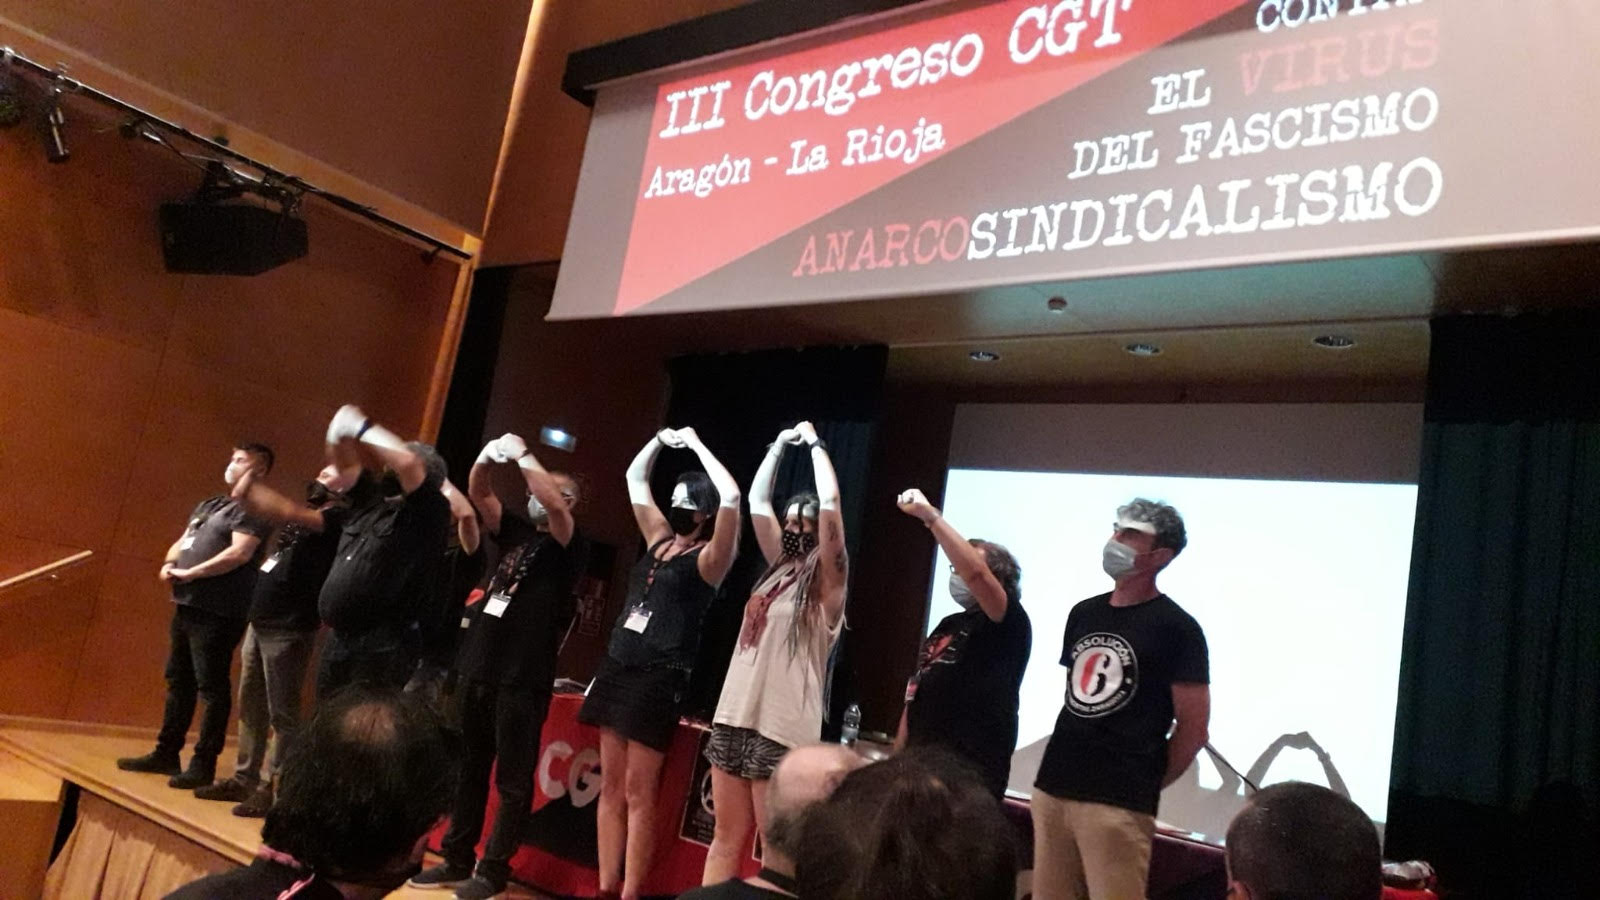 Termina el III Congreso de CGT Aragón - La Rioja